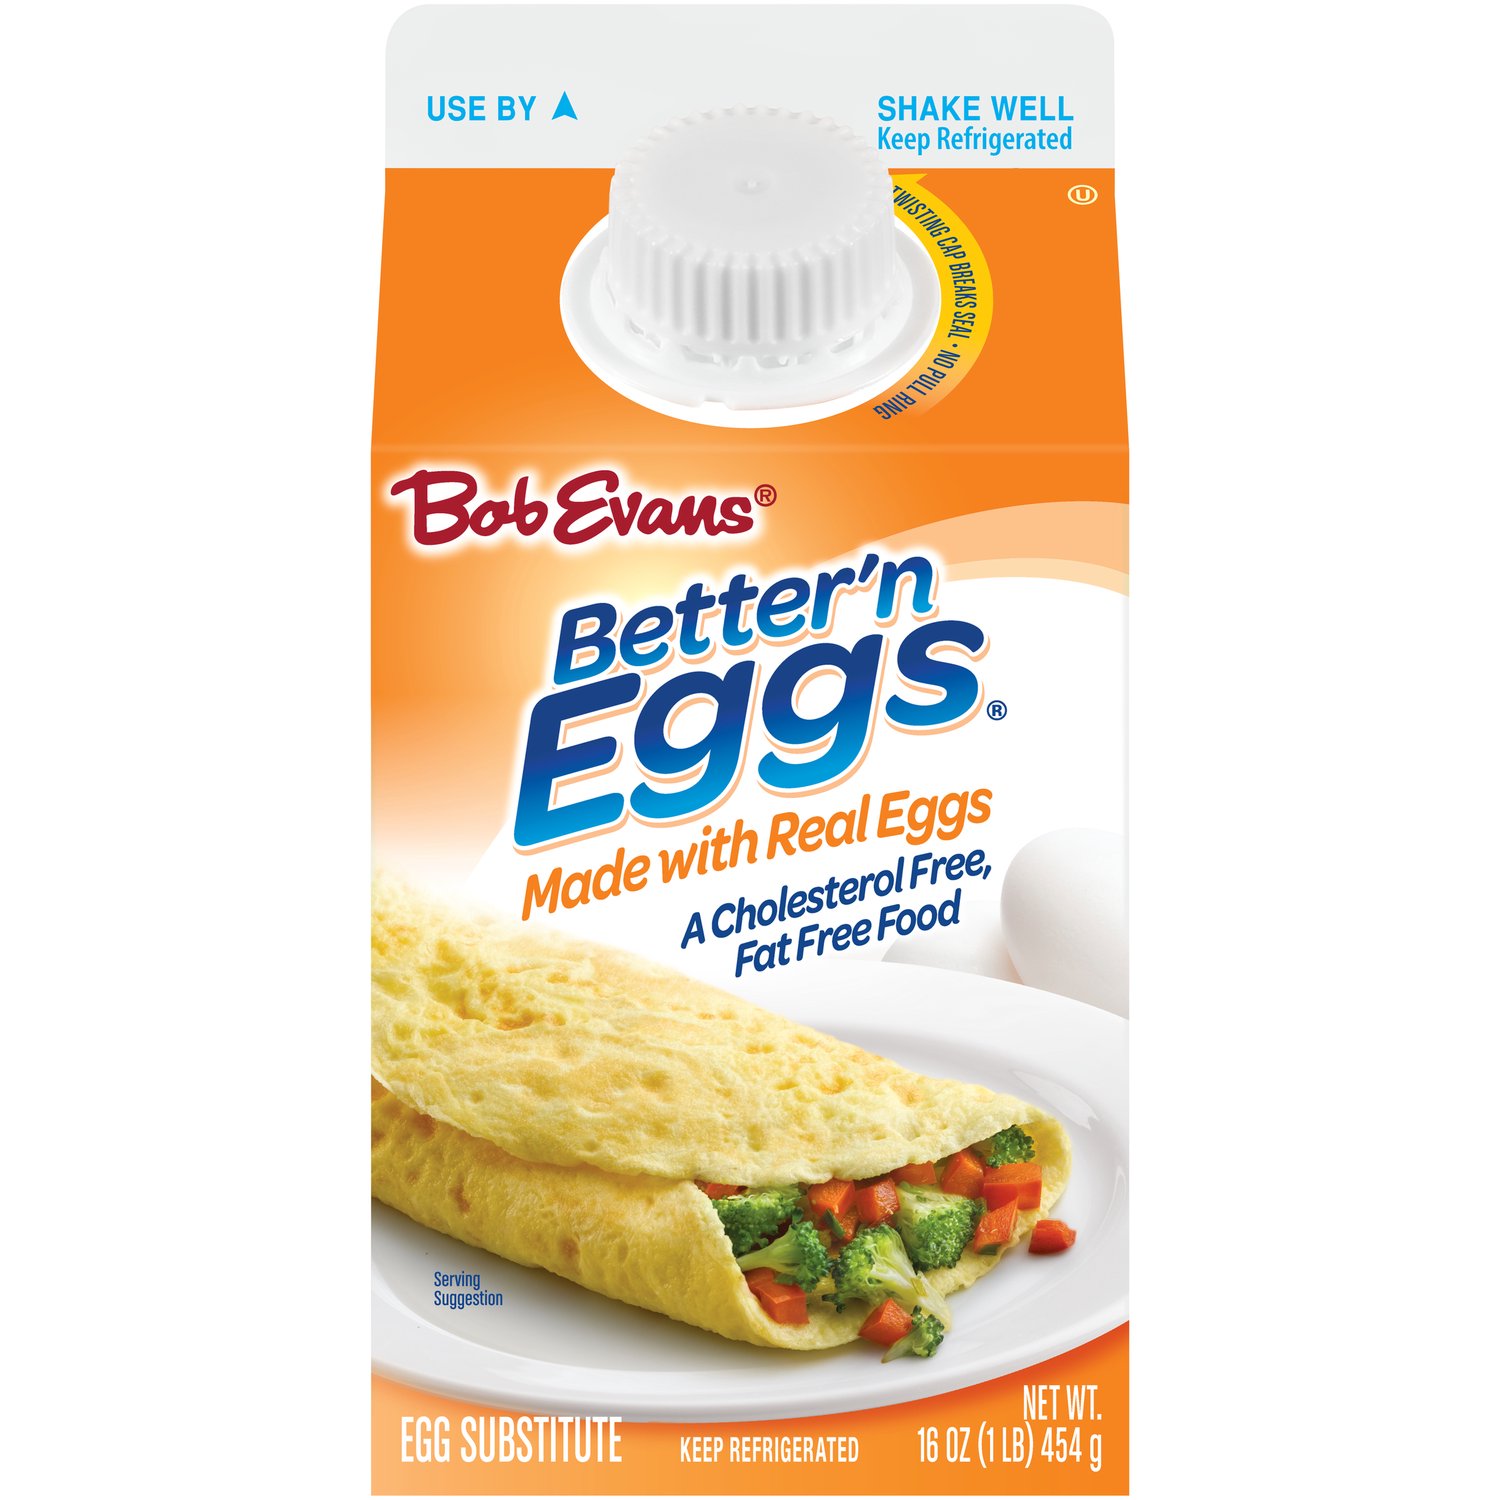 Eggs & Egg Substitutes